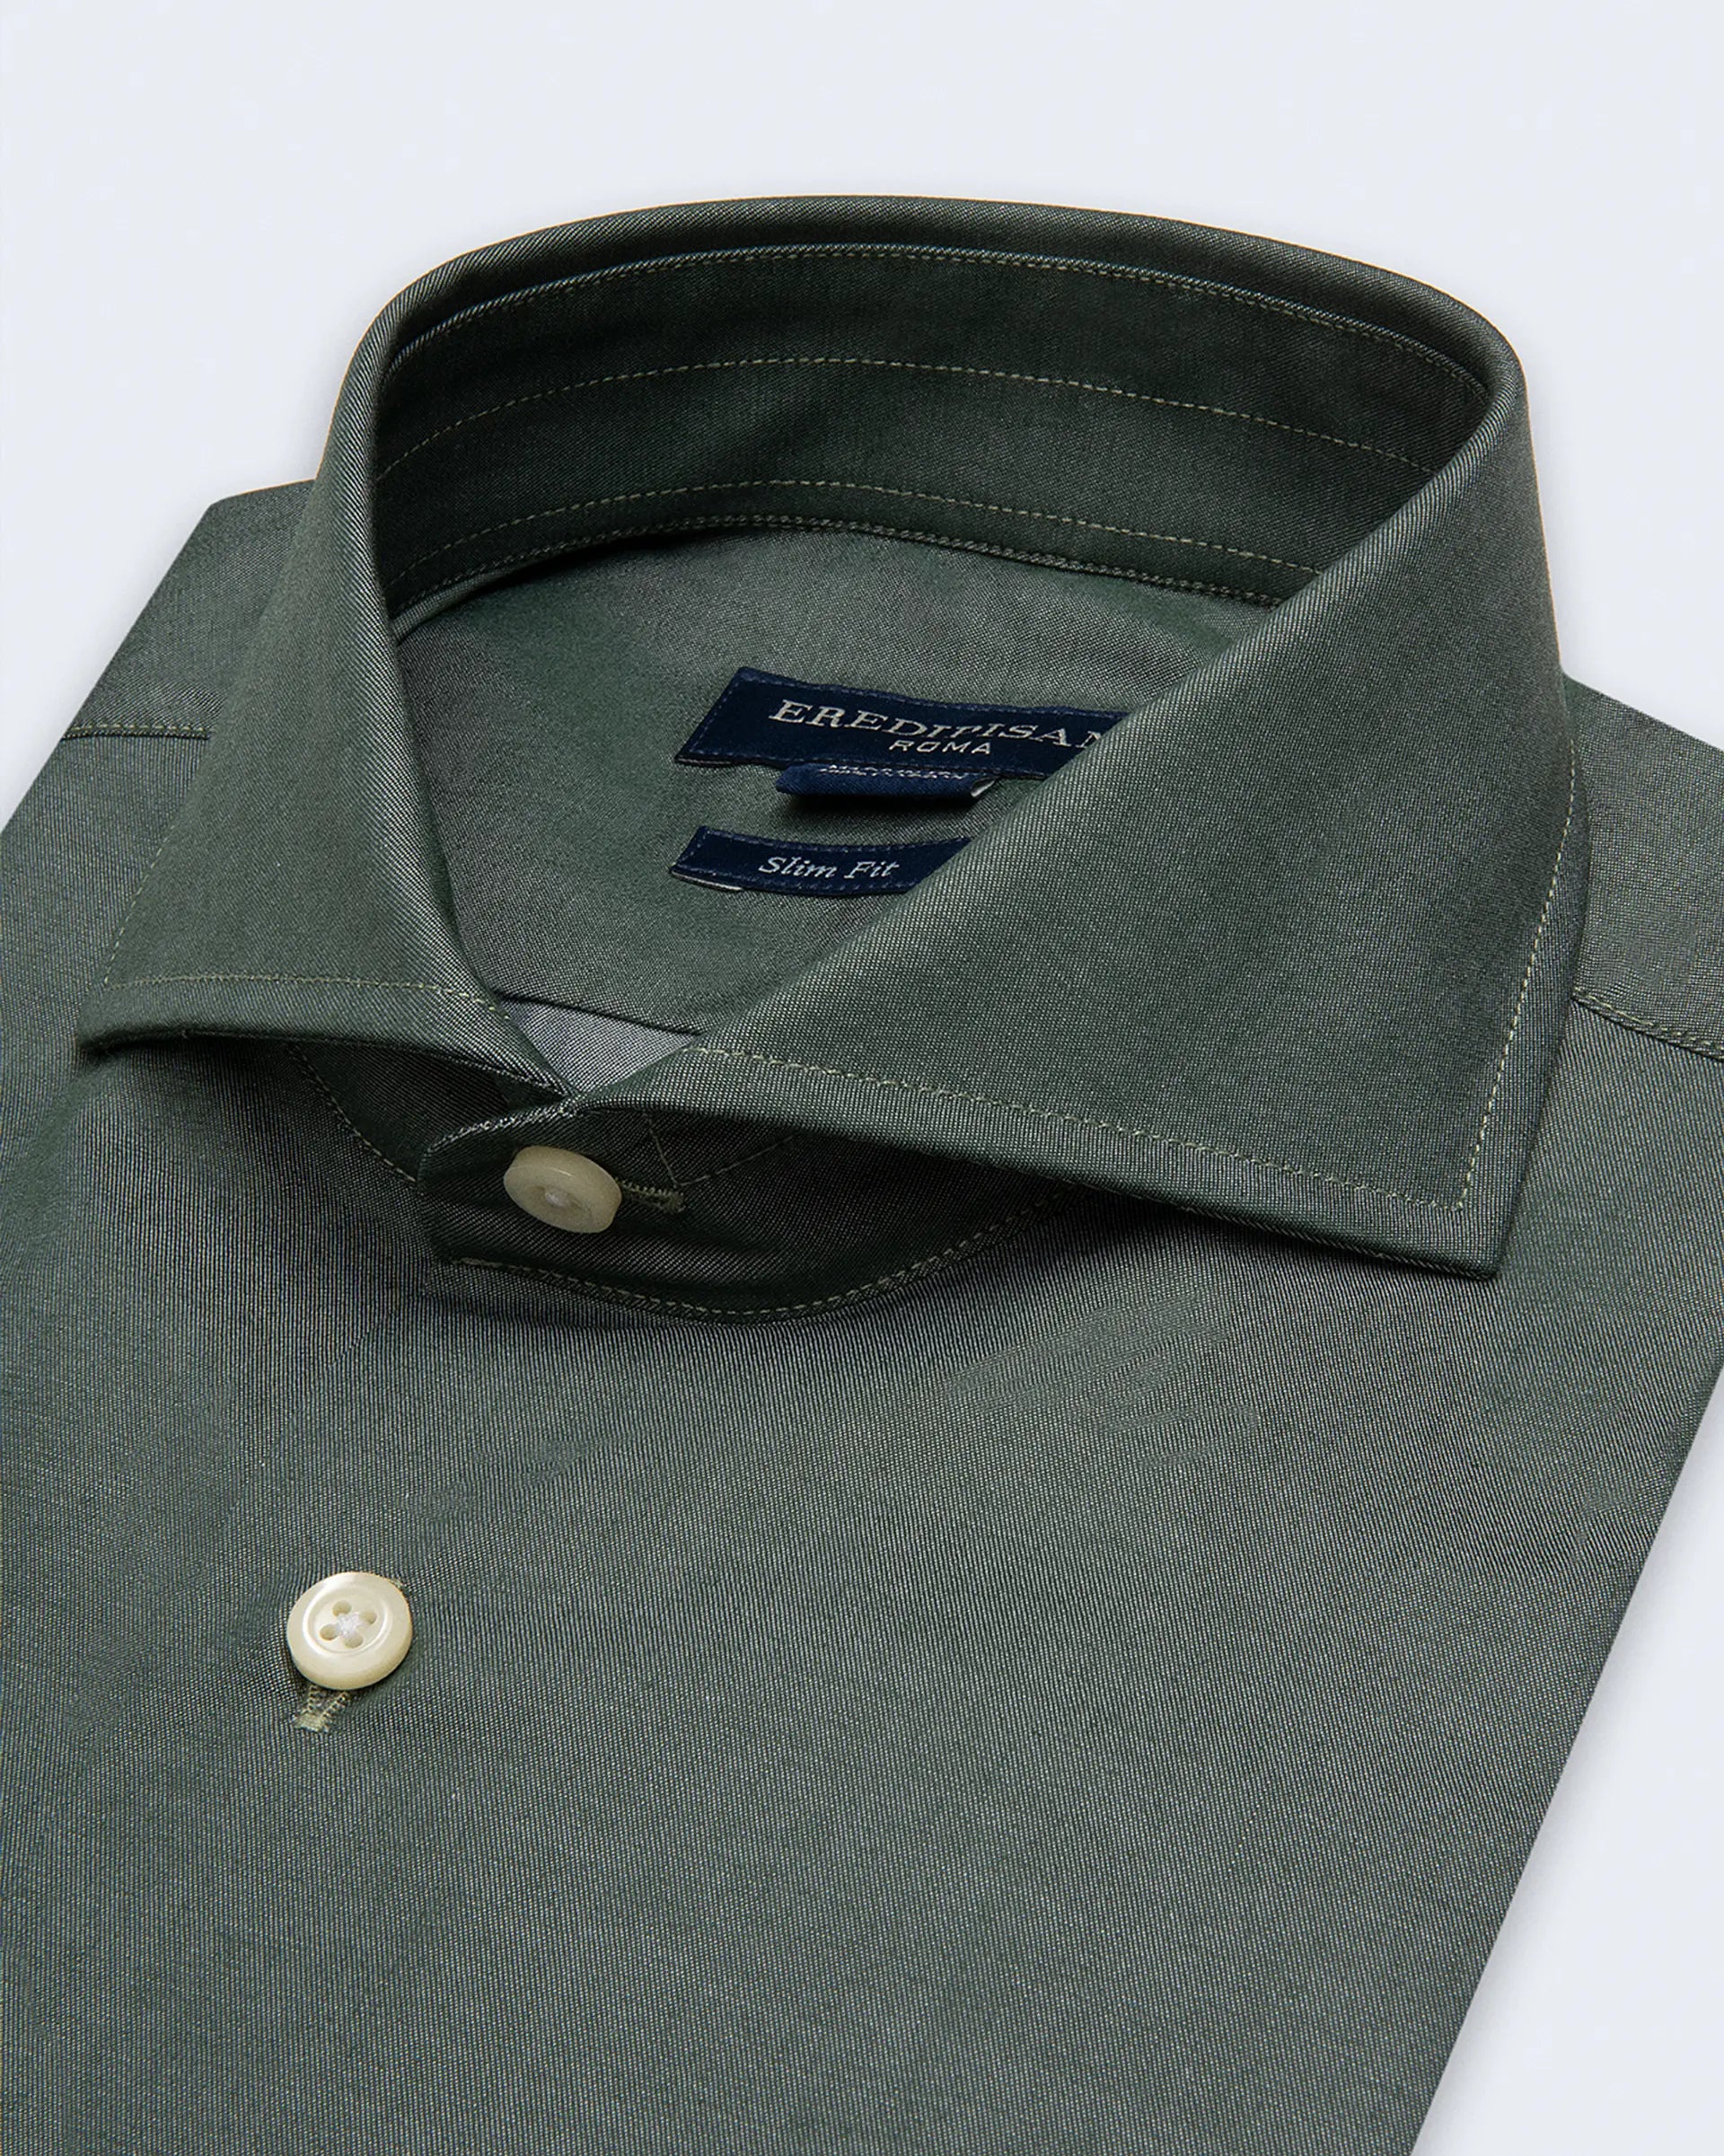 Camicia verde militare in twill cotone slim fit collo venezia